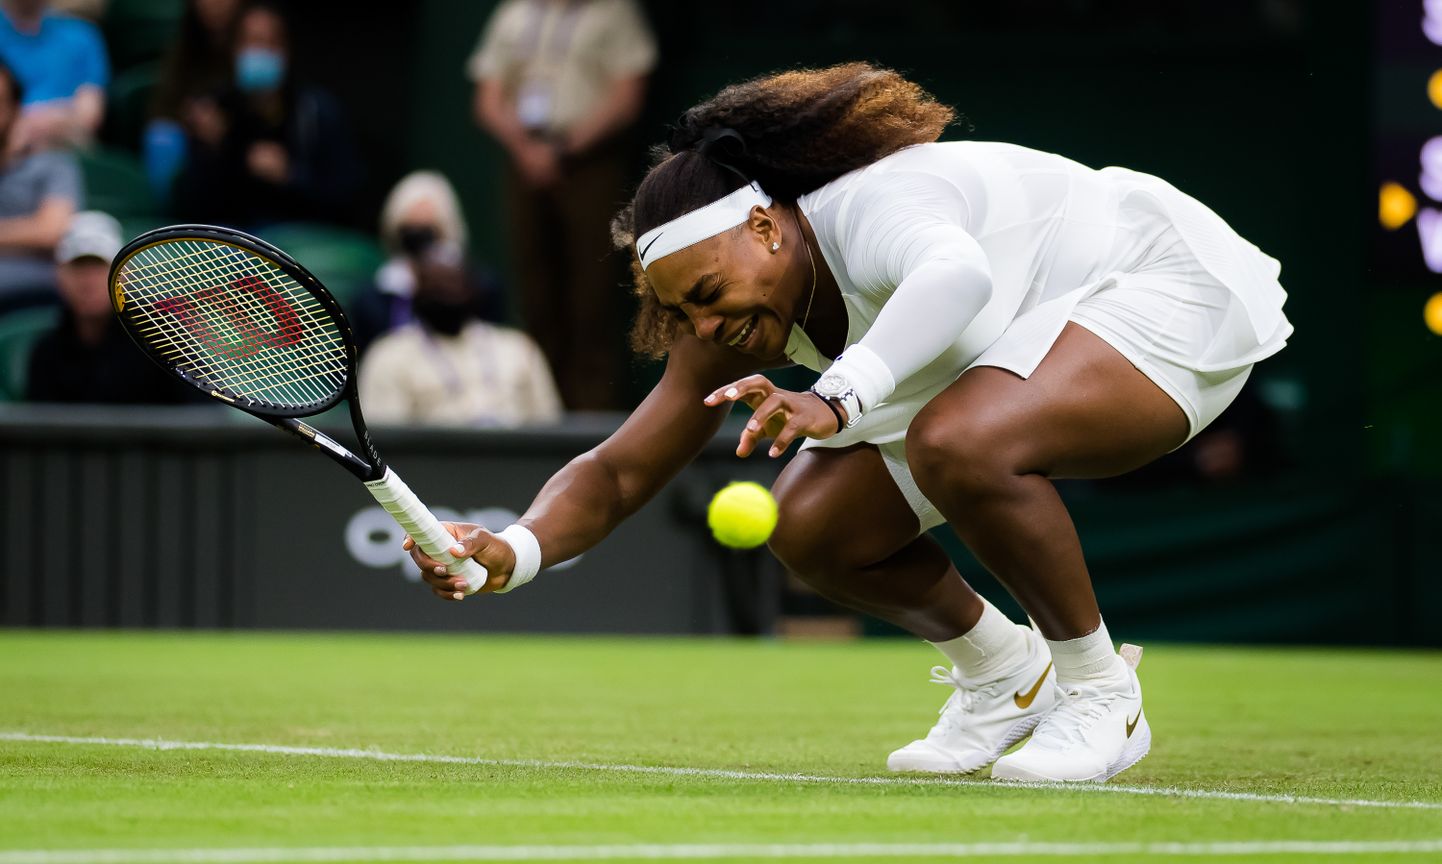 USA tennisetäht Serena Williams sai Wimbledoni tennisturniiri avamatšis vigastada.